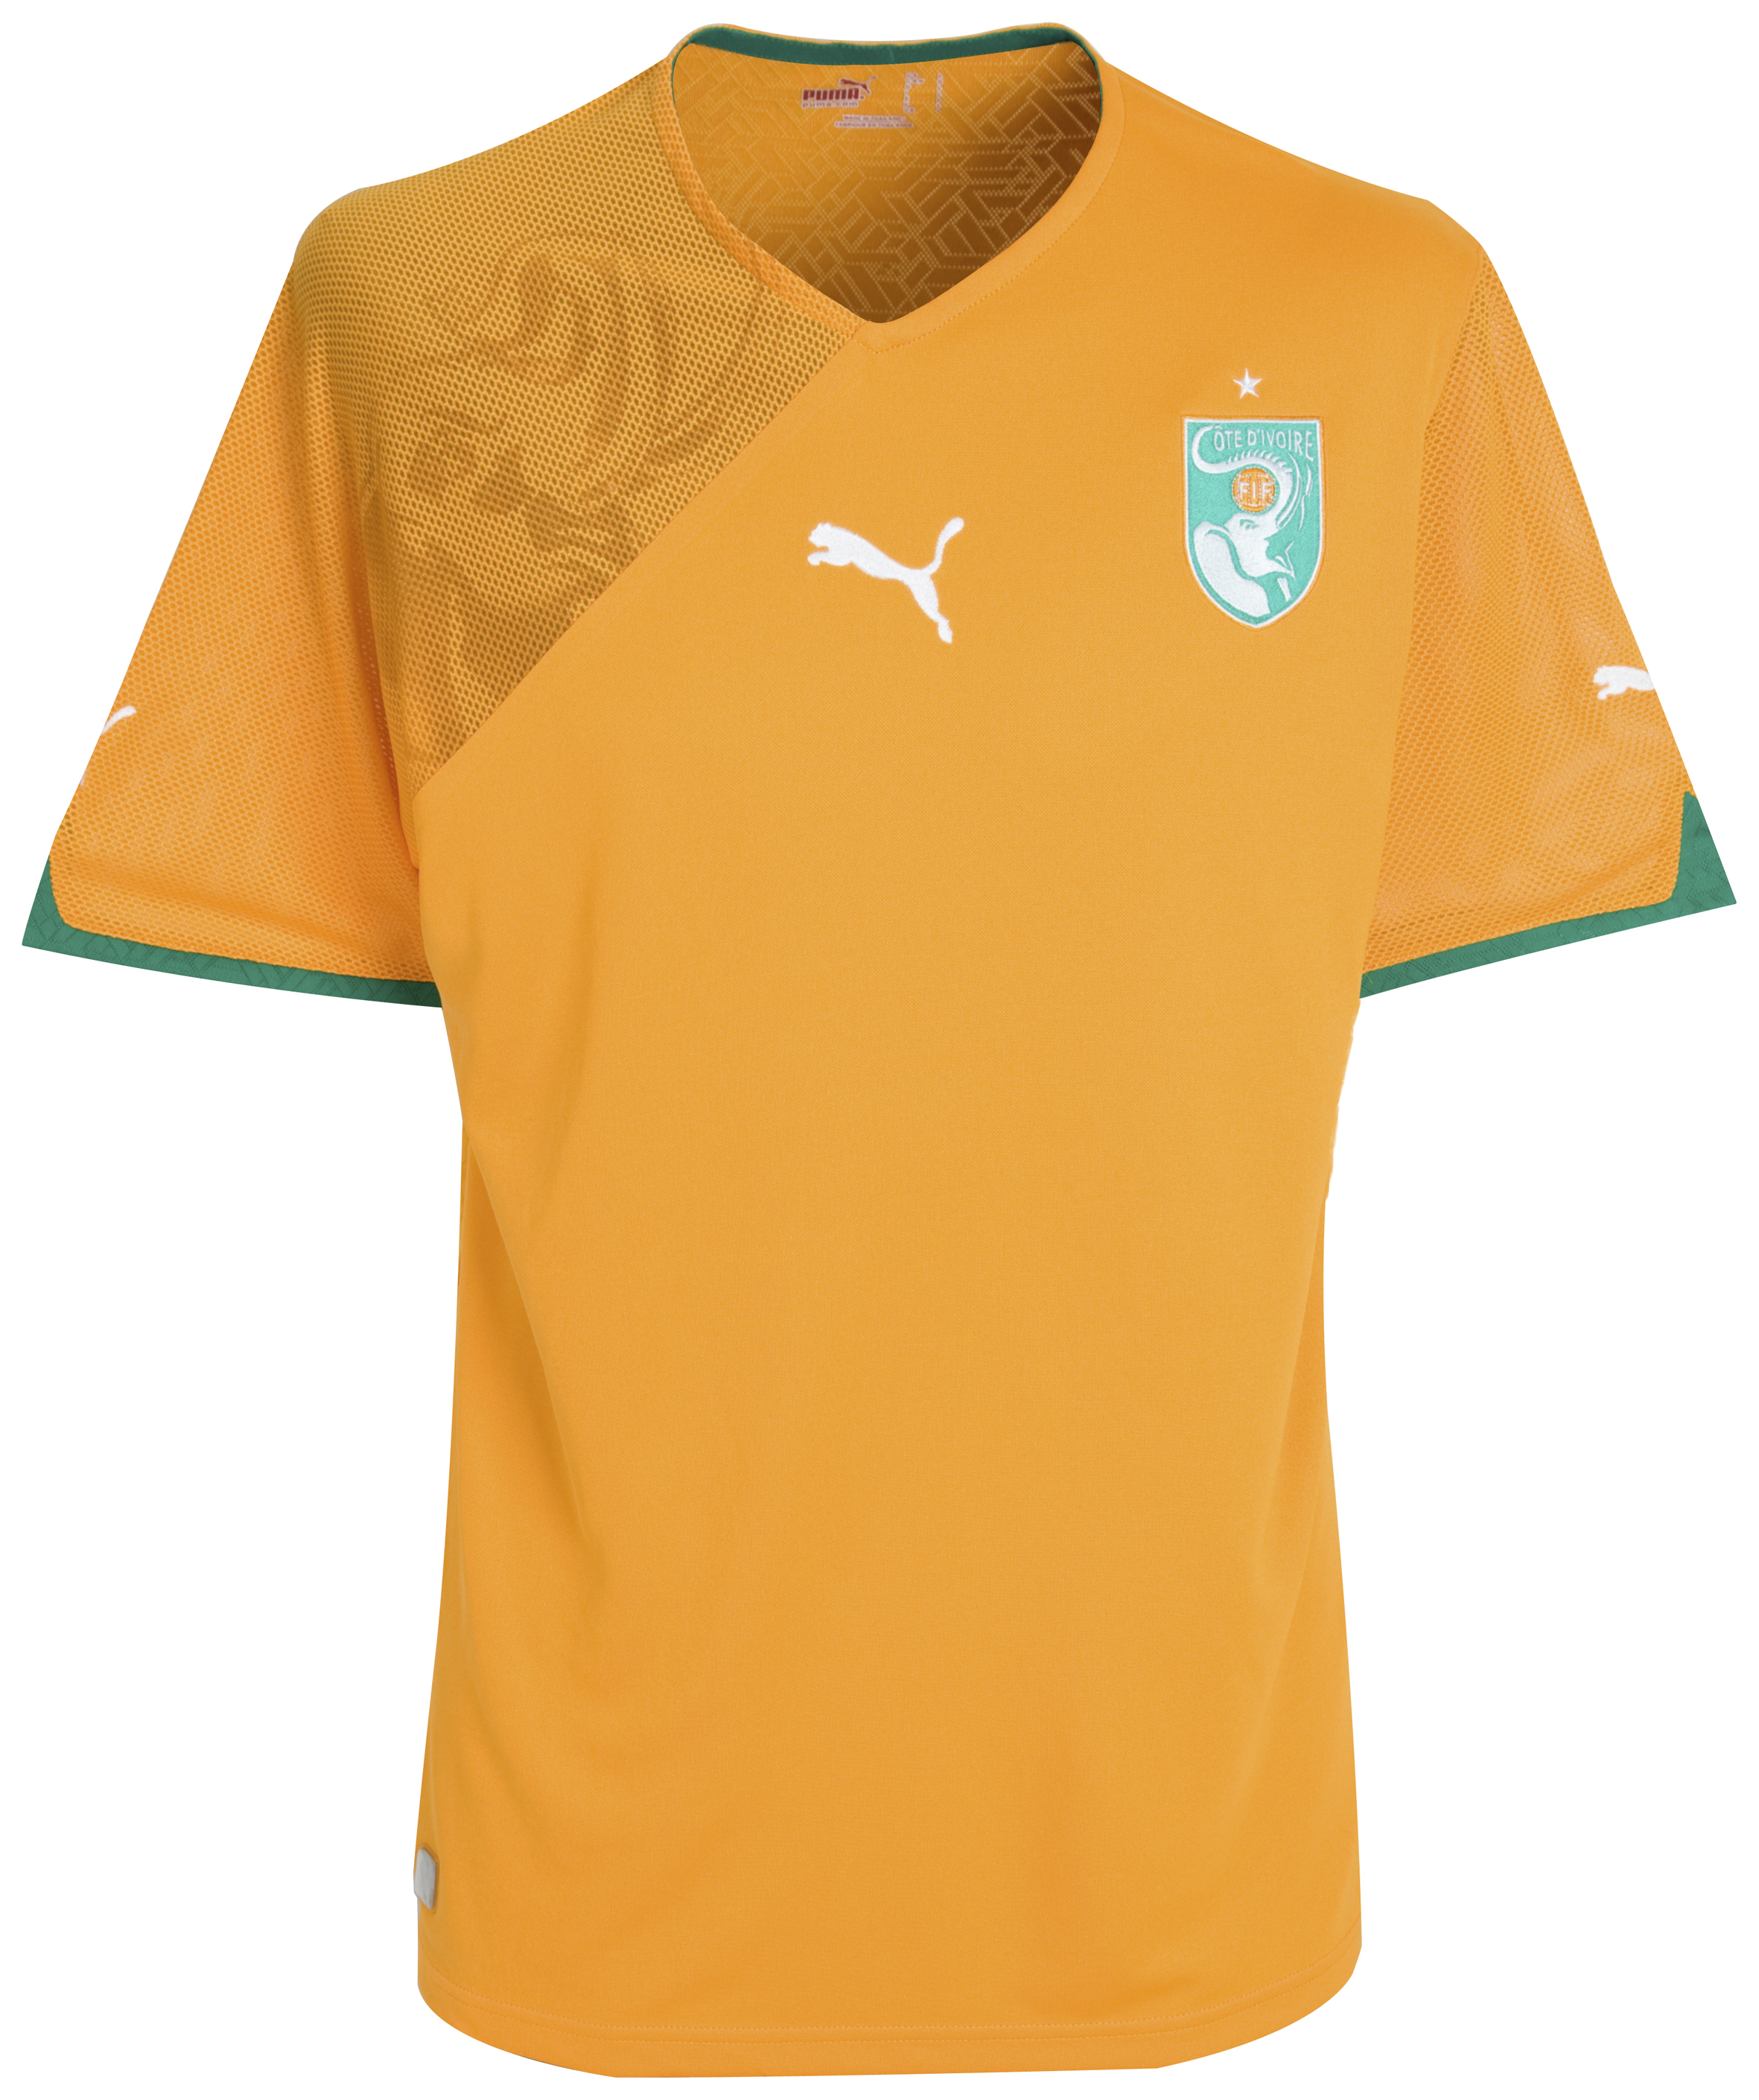 الملابس الخاصة بالمنتخبات في كأس العالم (جنوب أفريقيا 2010) Kb-60875